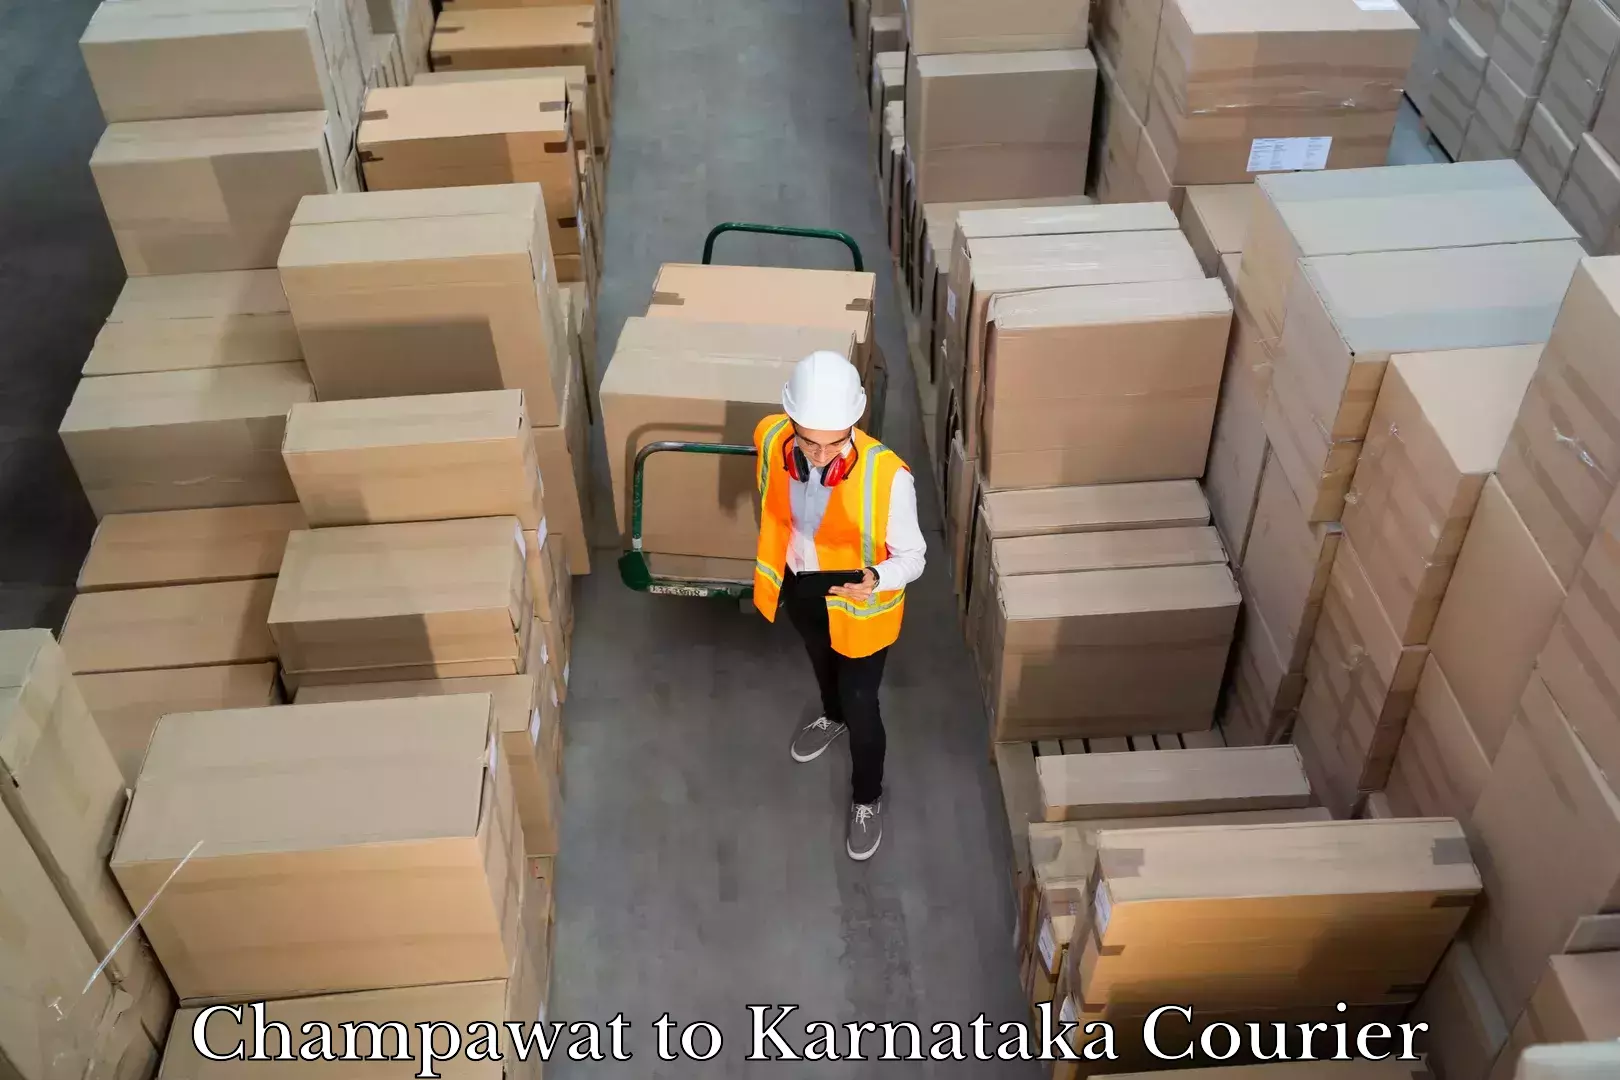 Luggage shipping service Champawat to Karnataka